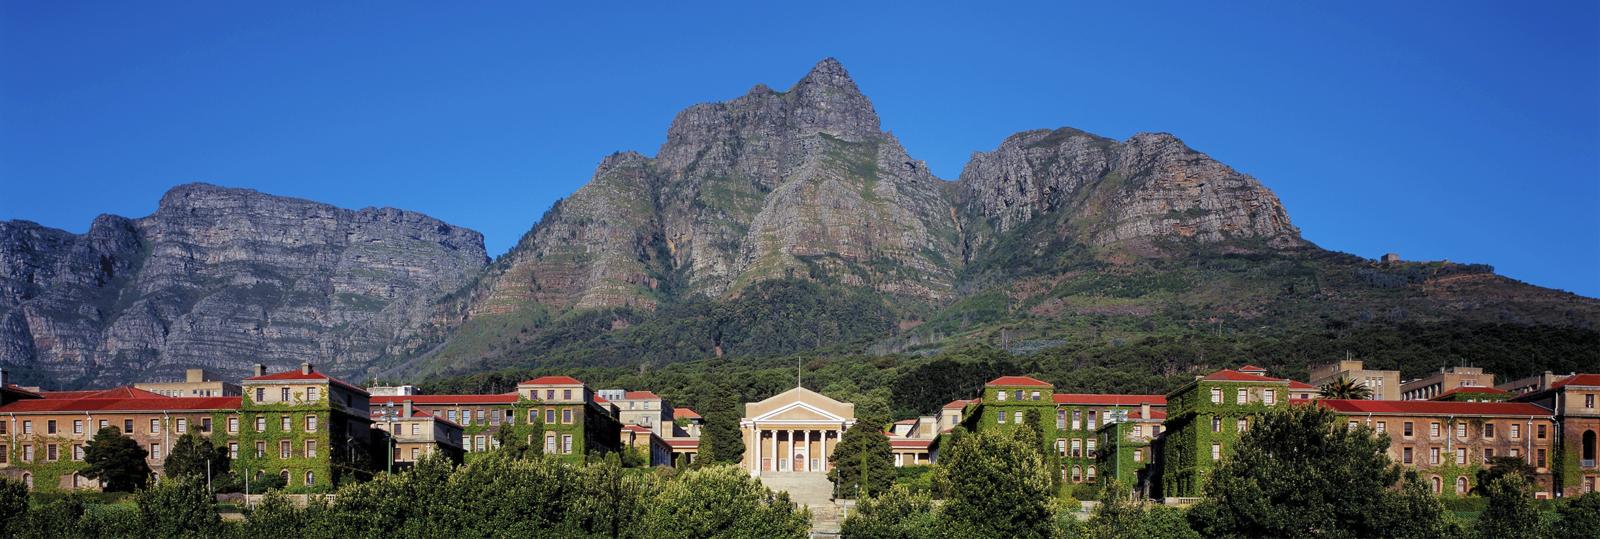 UCT Upper Campus